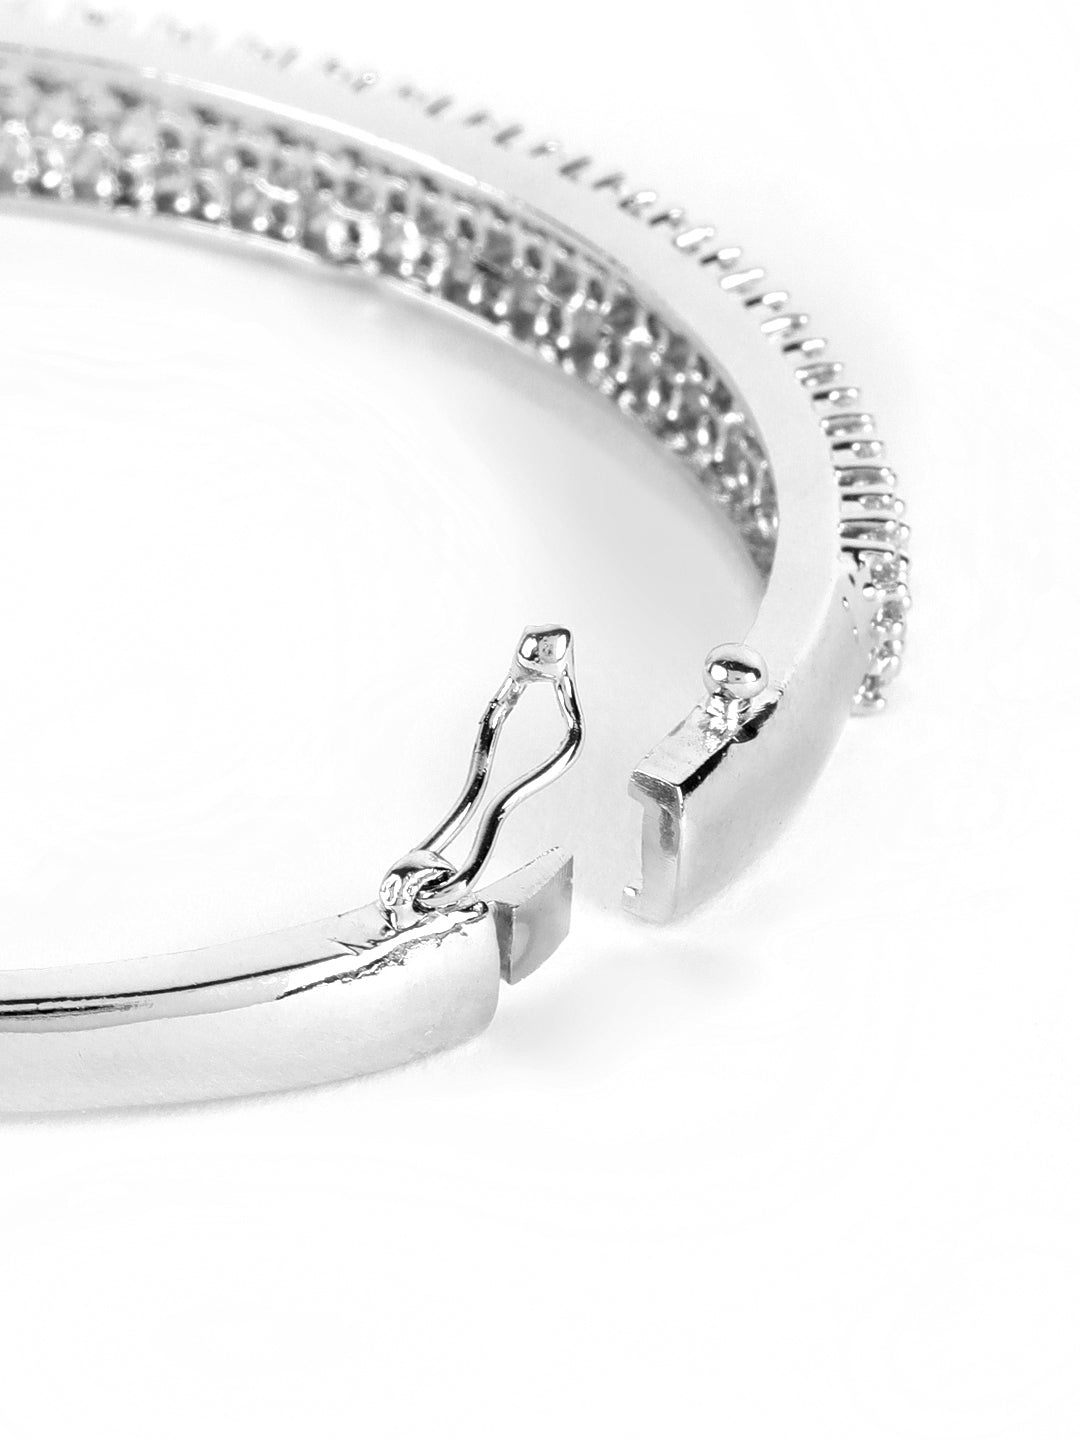 Silver Plated American Diamond Studded Bracelet - Jazzandsizzle